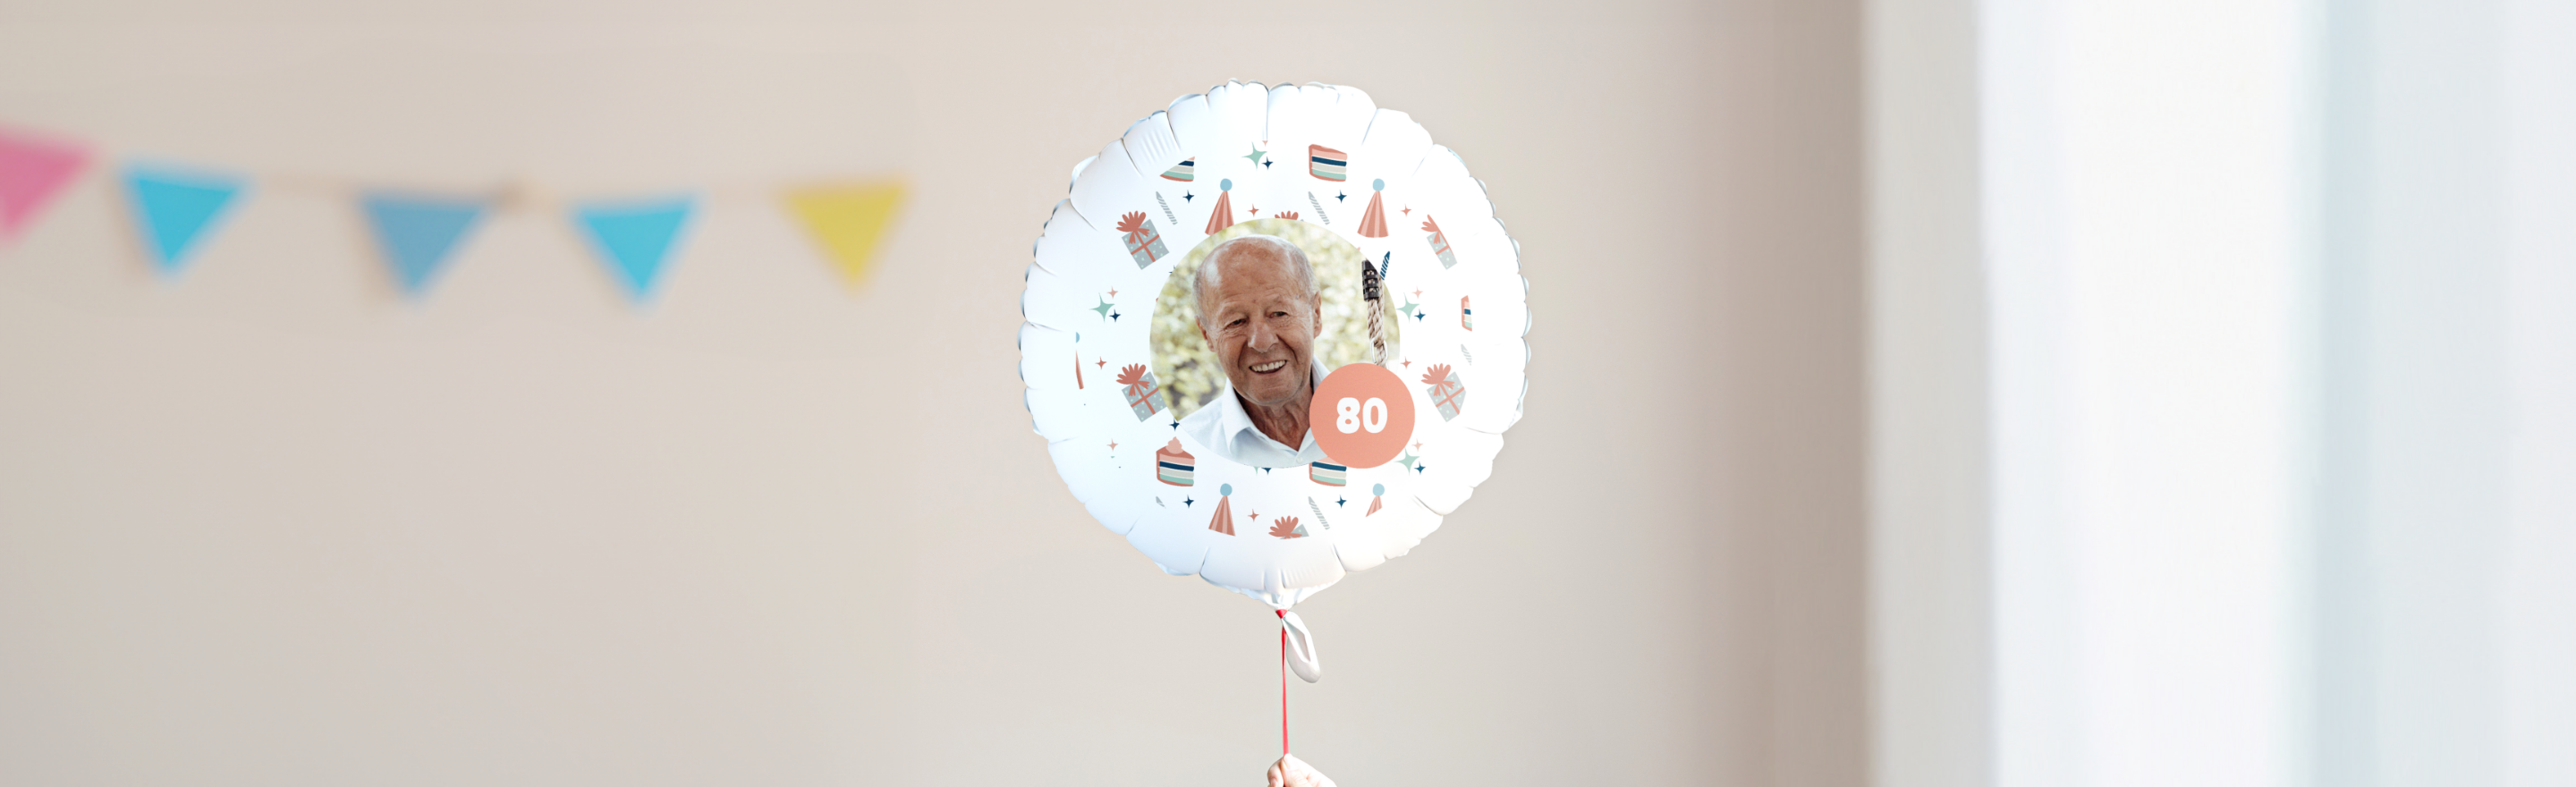 Regalos de cumpleaños: 80 años